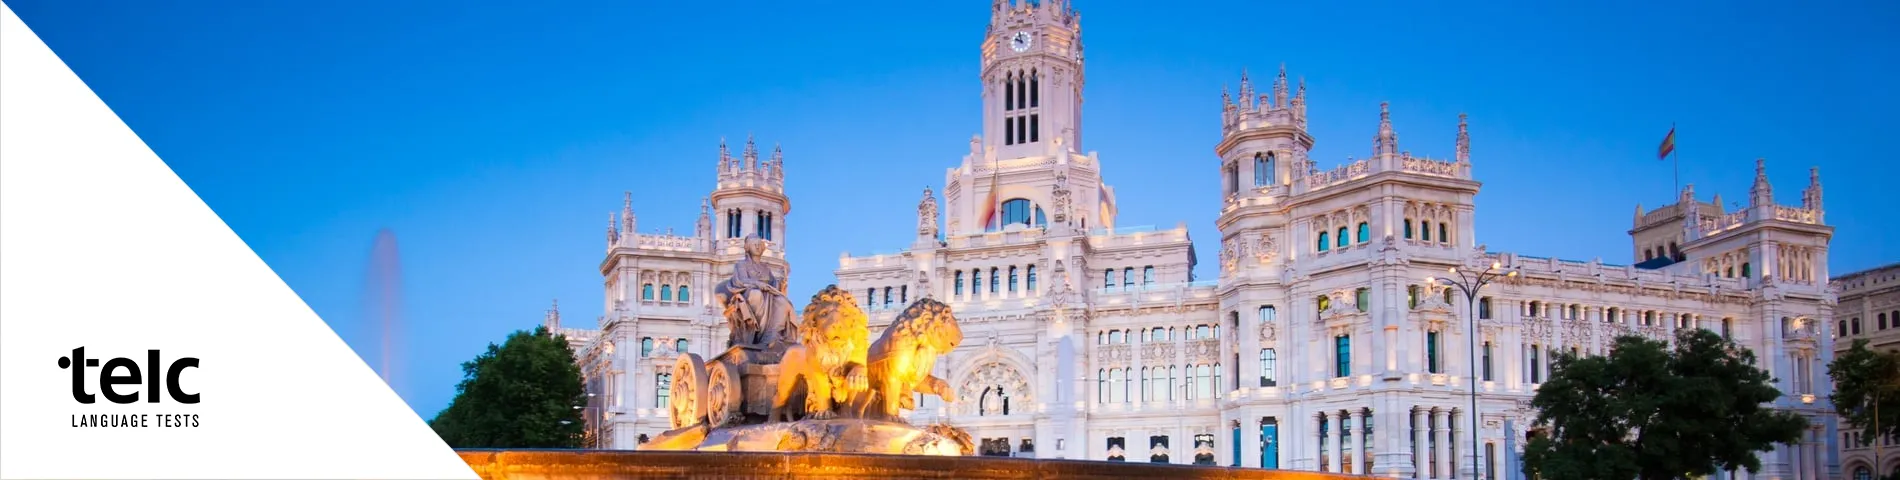 Мадрид - 